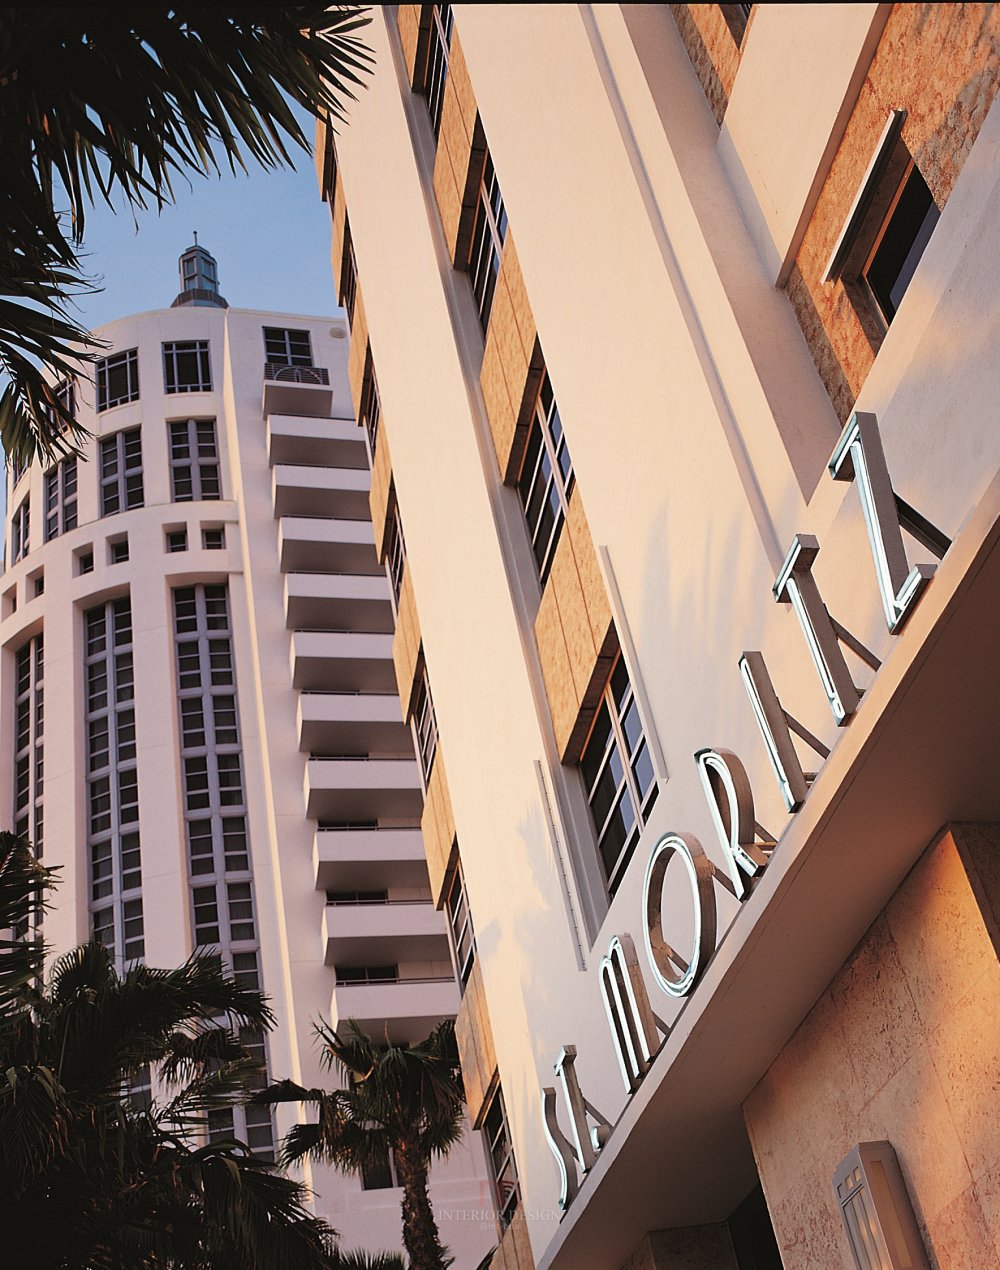 迈阿密罗斯海滩酒店 Loews Miami Beach Hotel_53741952-H1-MBH085.jpg